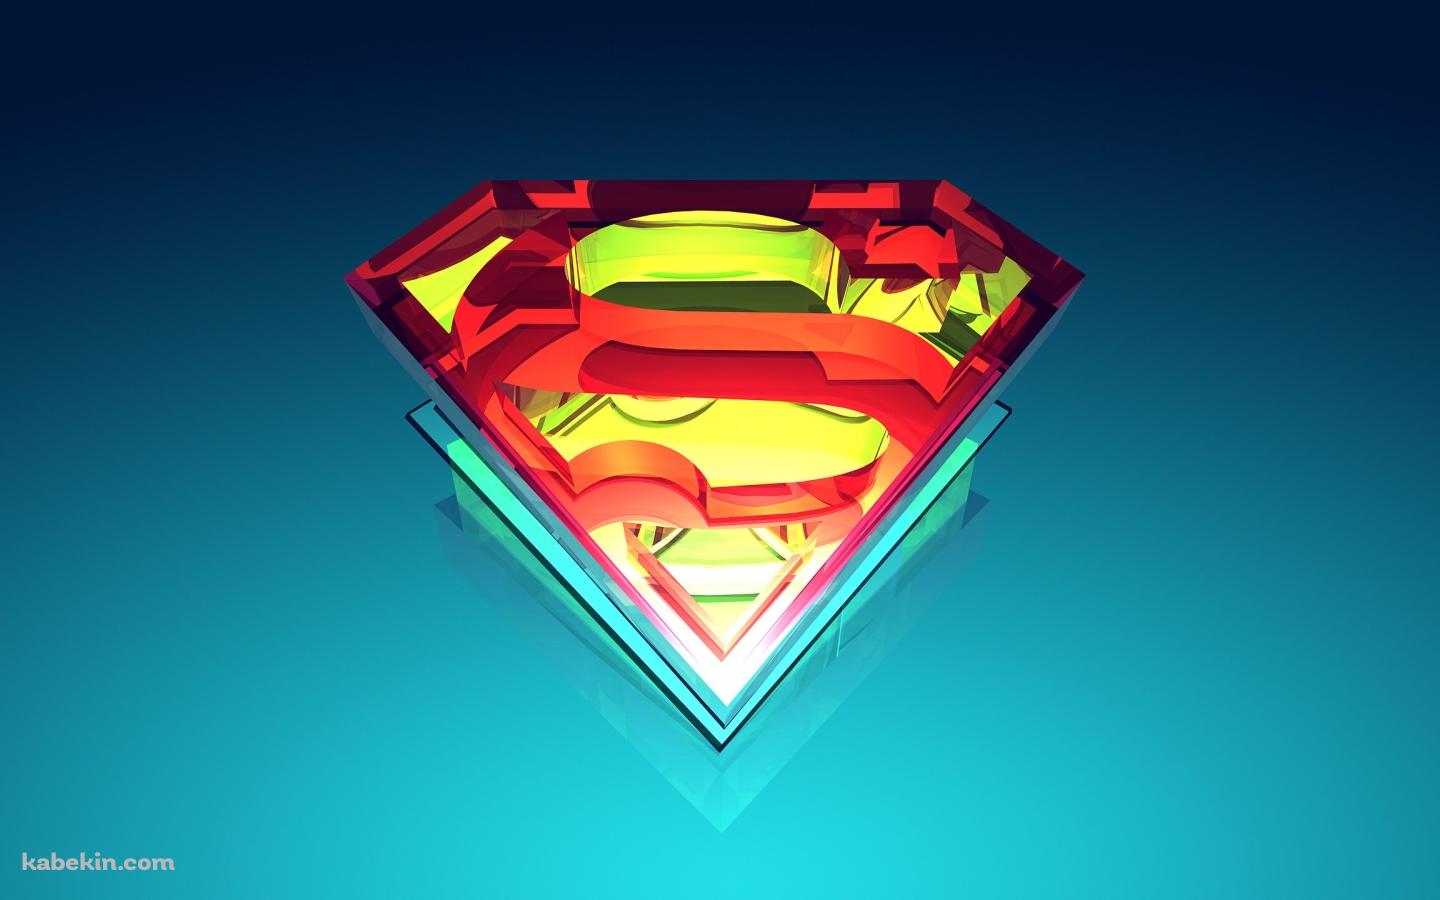 スーパーマン 3Dロゴの壁紙(1440px x 900px) 高画質 PC・デスクトップ用